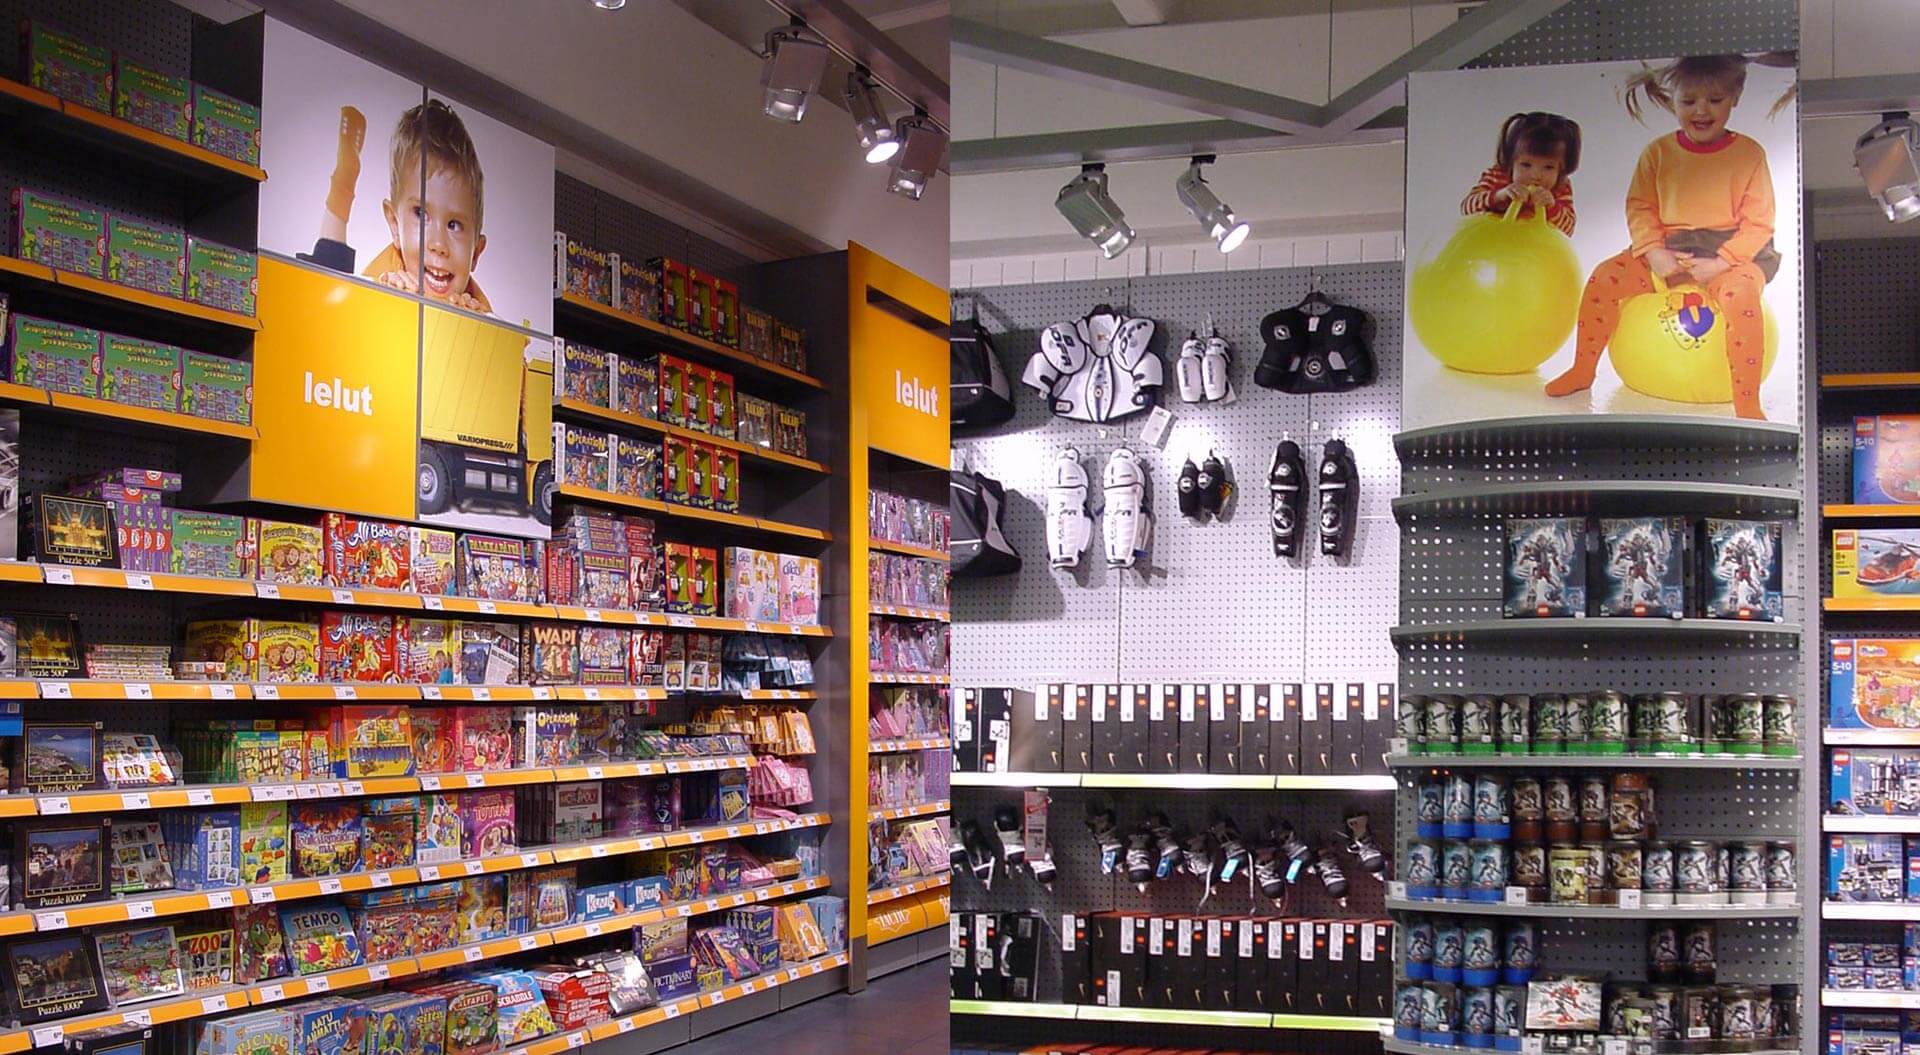 K CityMarket hypermarket Finland, children's toy department merchandising system and branding